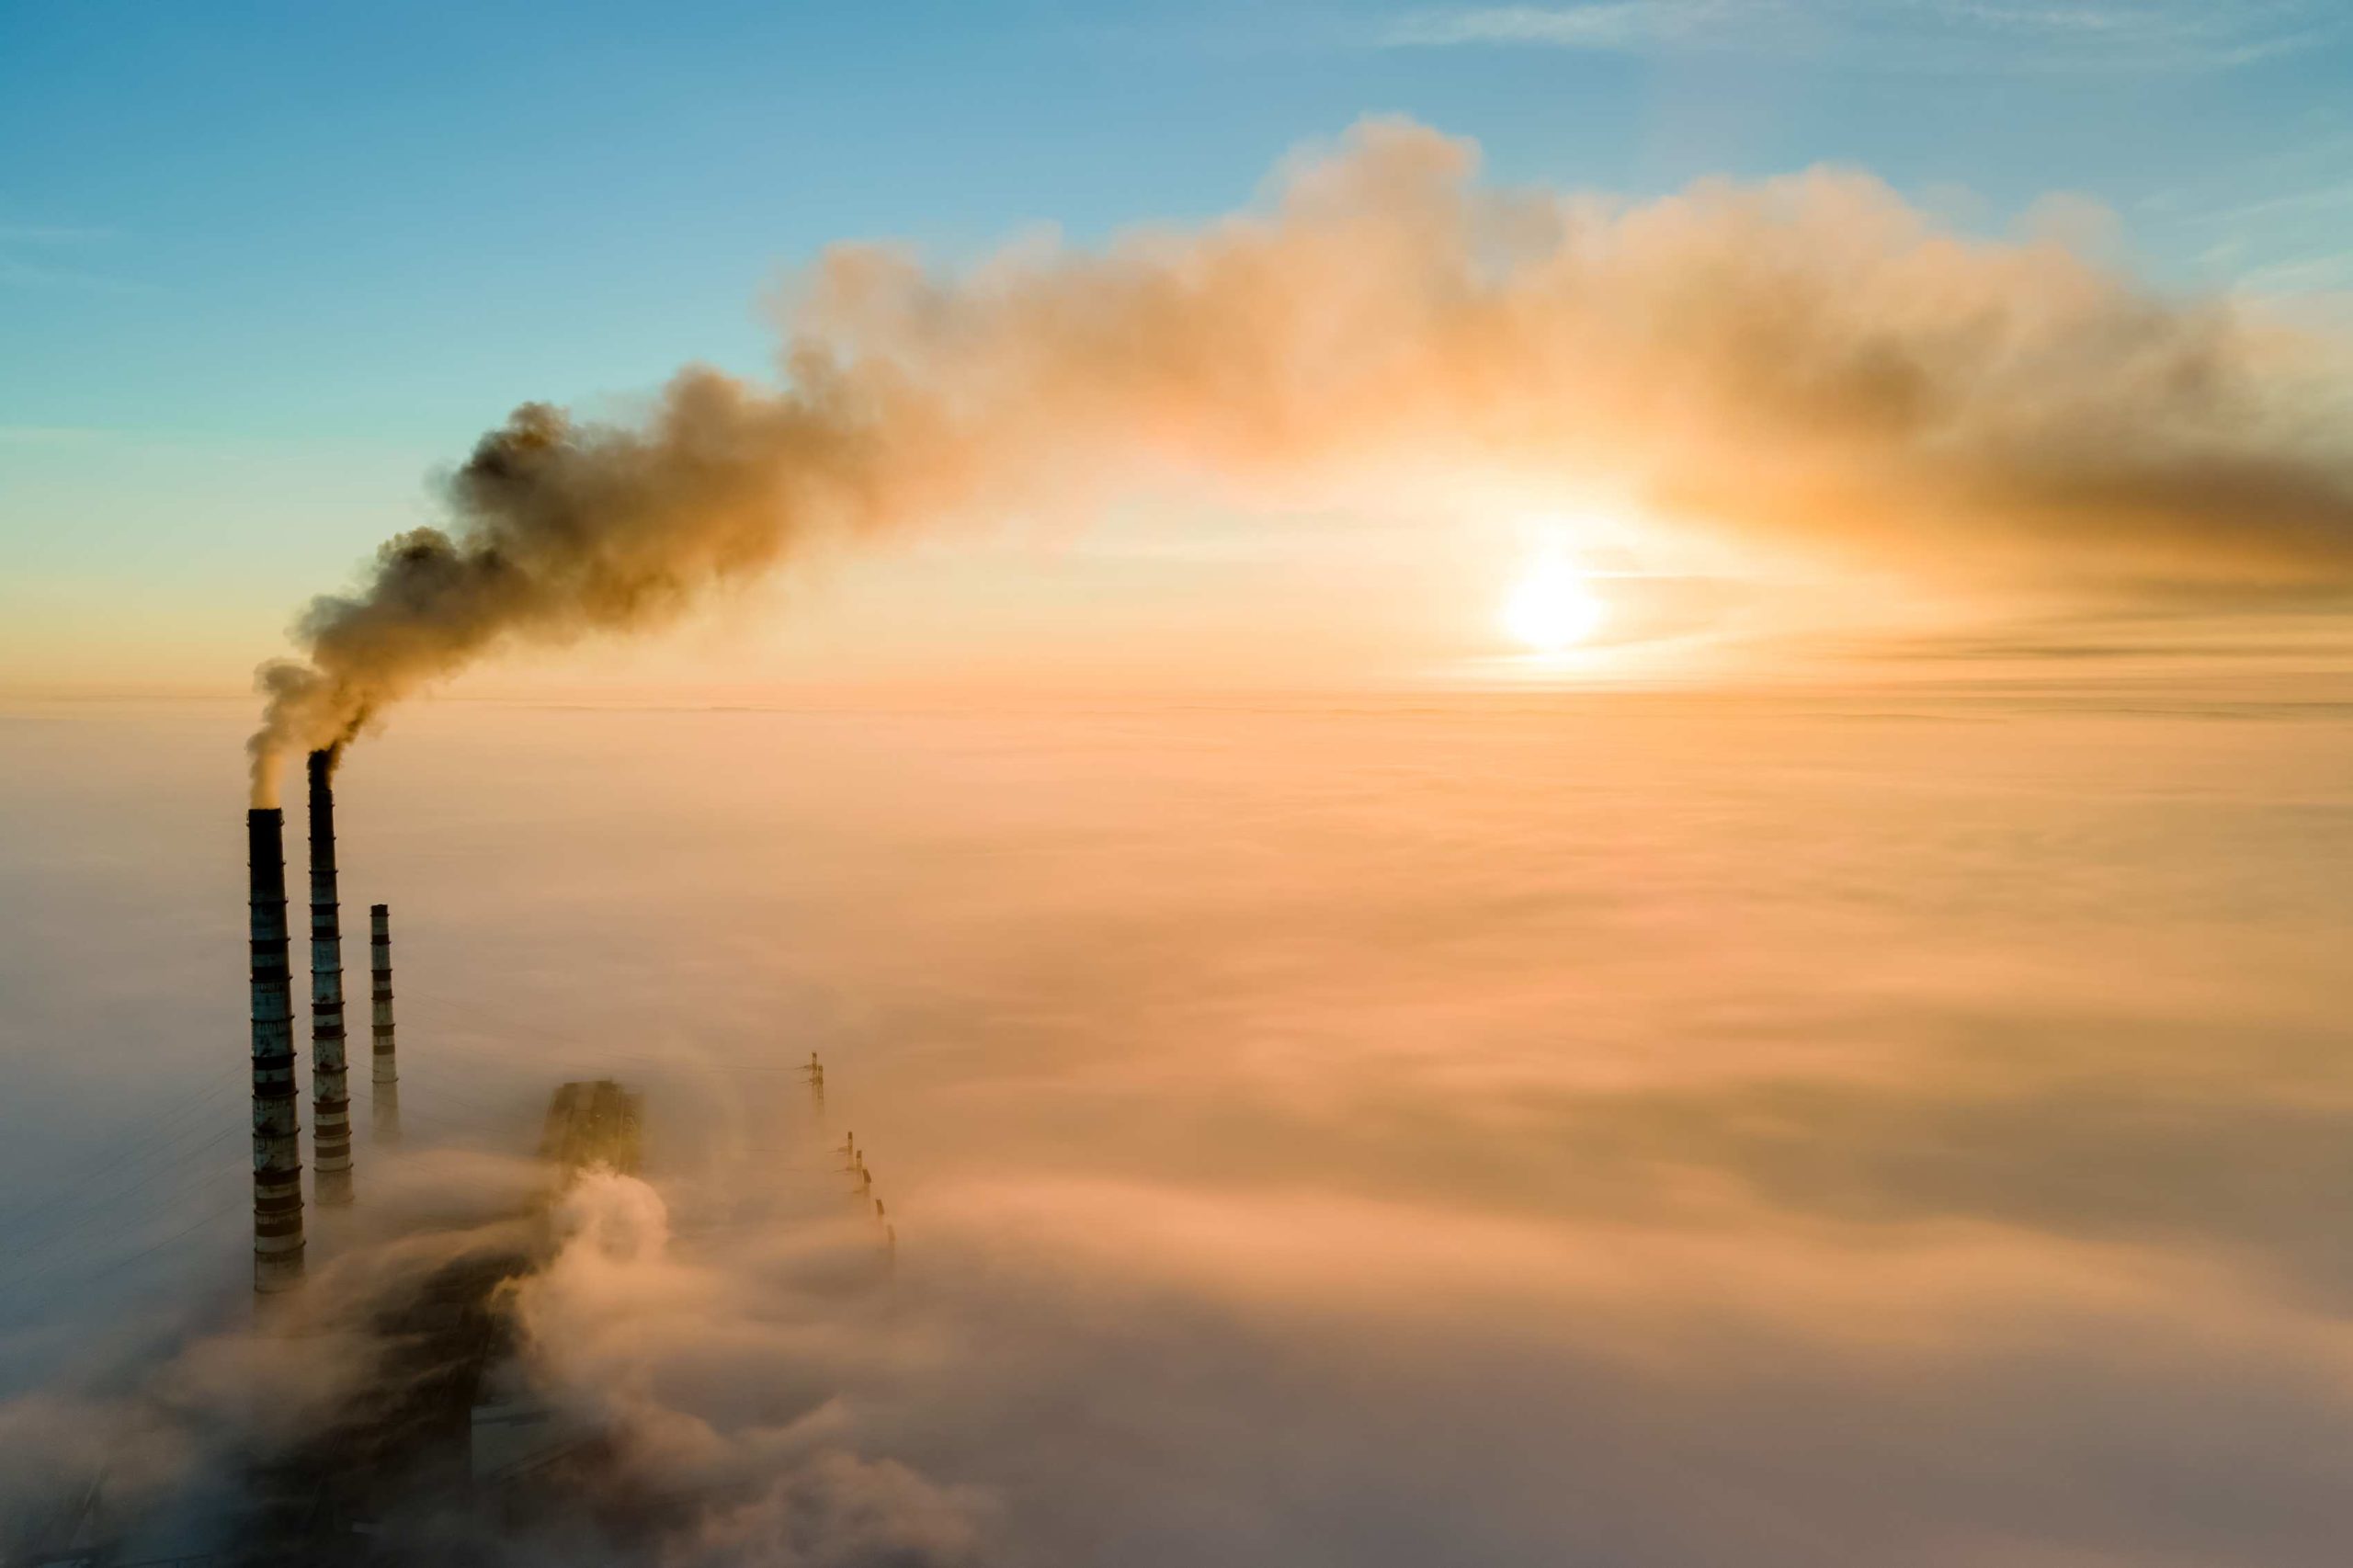 vista-aerea-tubos-altos-planta-energia-carbon-humo-negro-subiendo-atmosfera-contaminante-al-atardecer